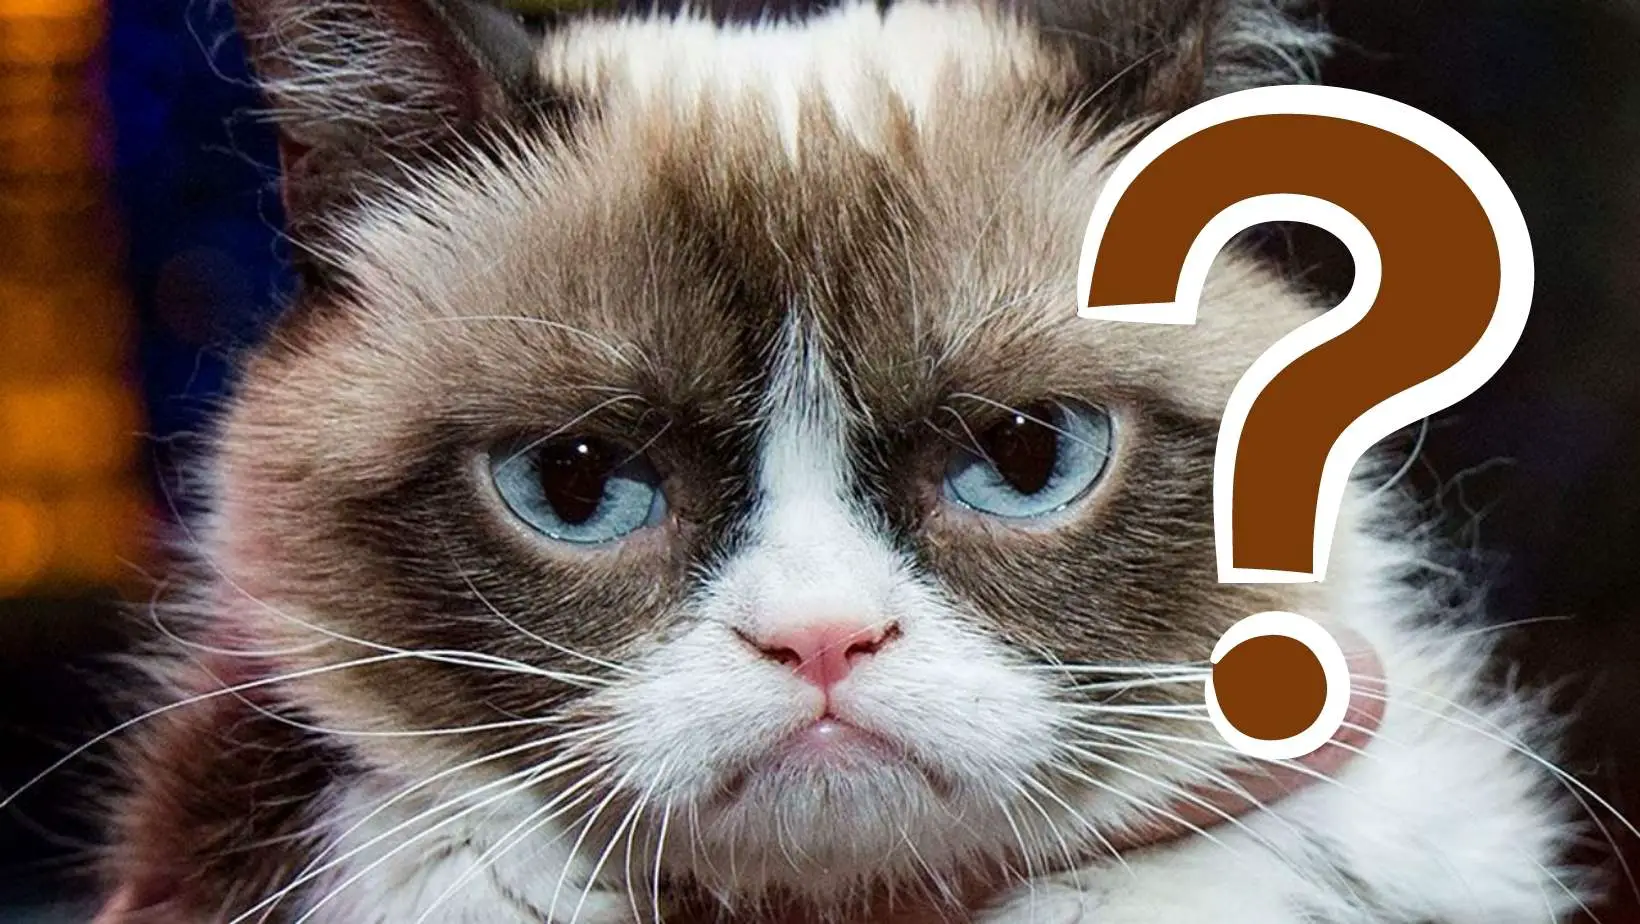 Is Grumpy Cat Dead?